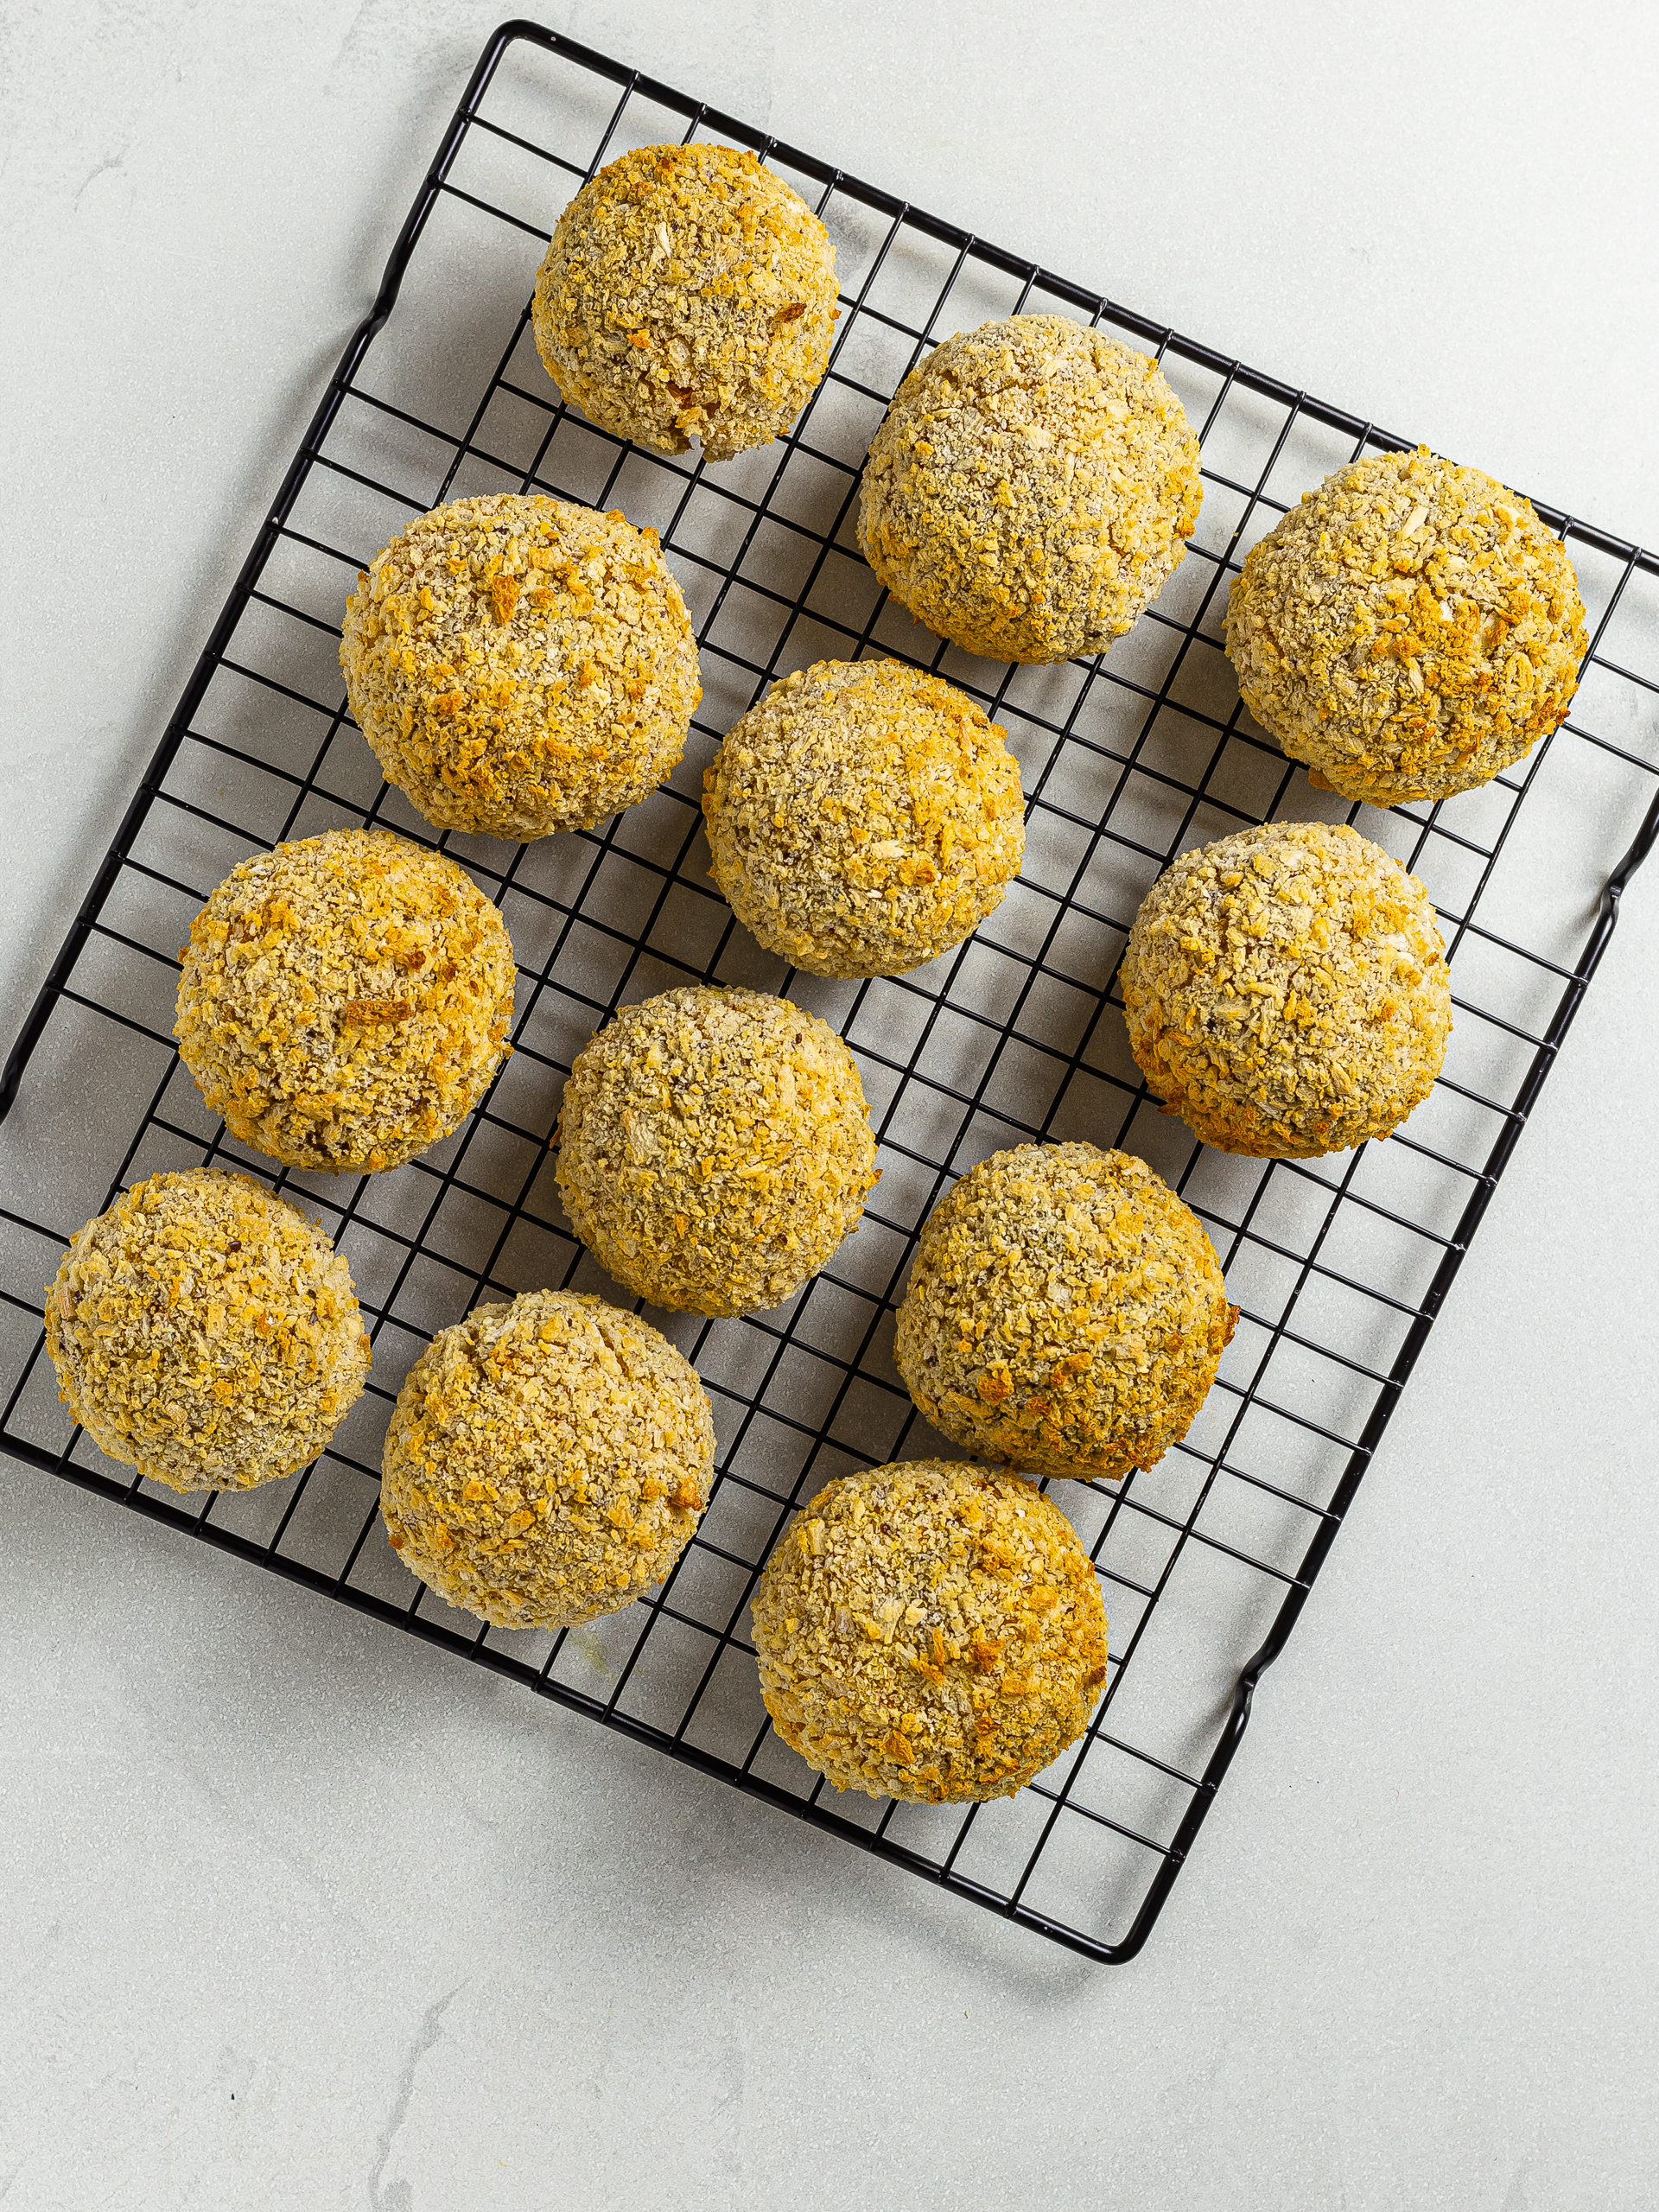 oven-baked lentil bolognese rice balls